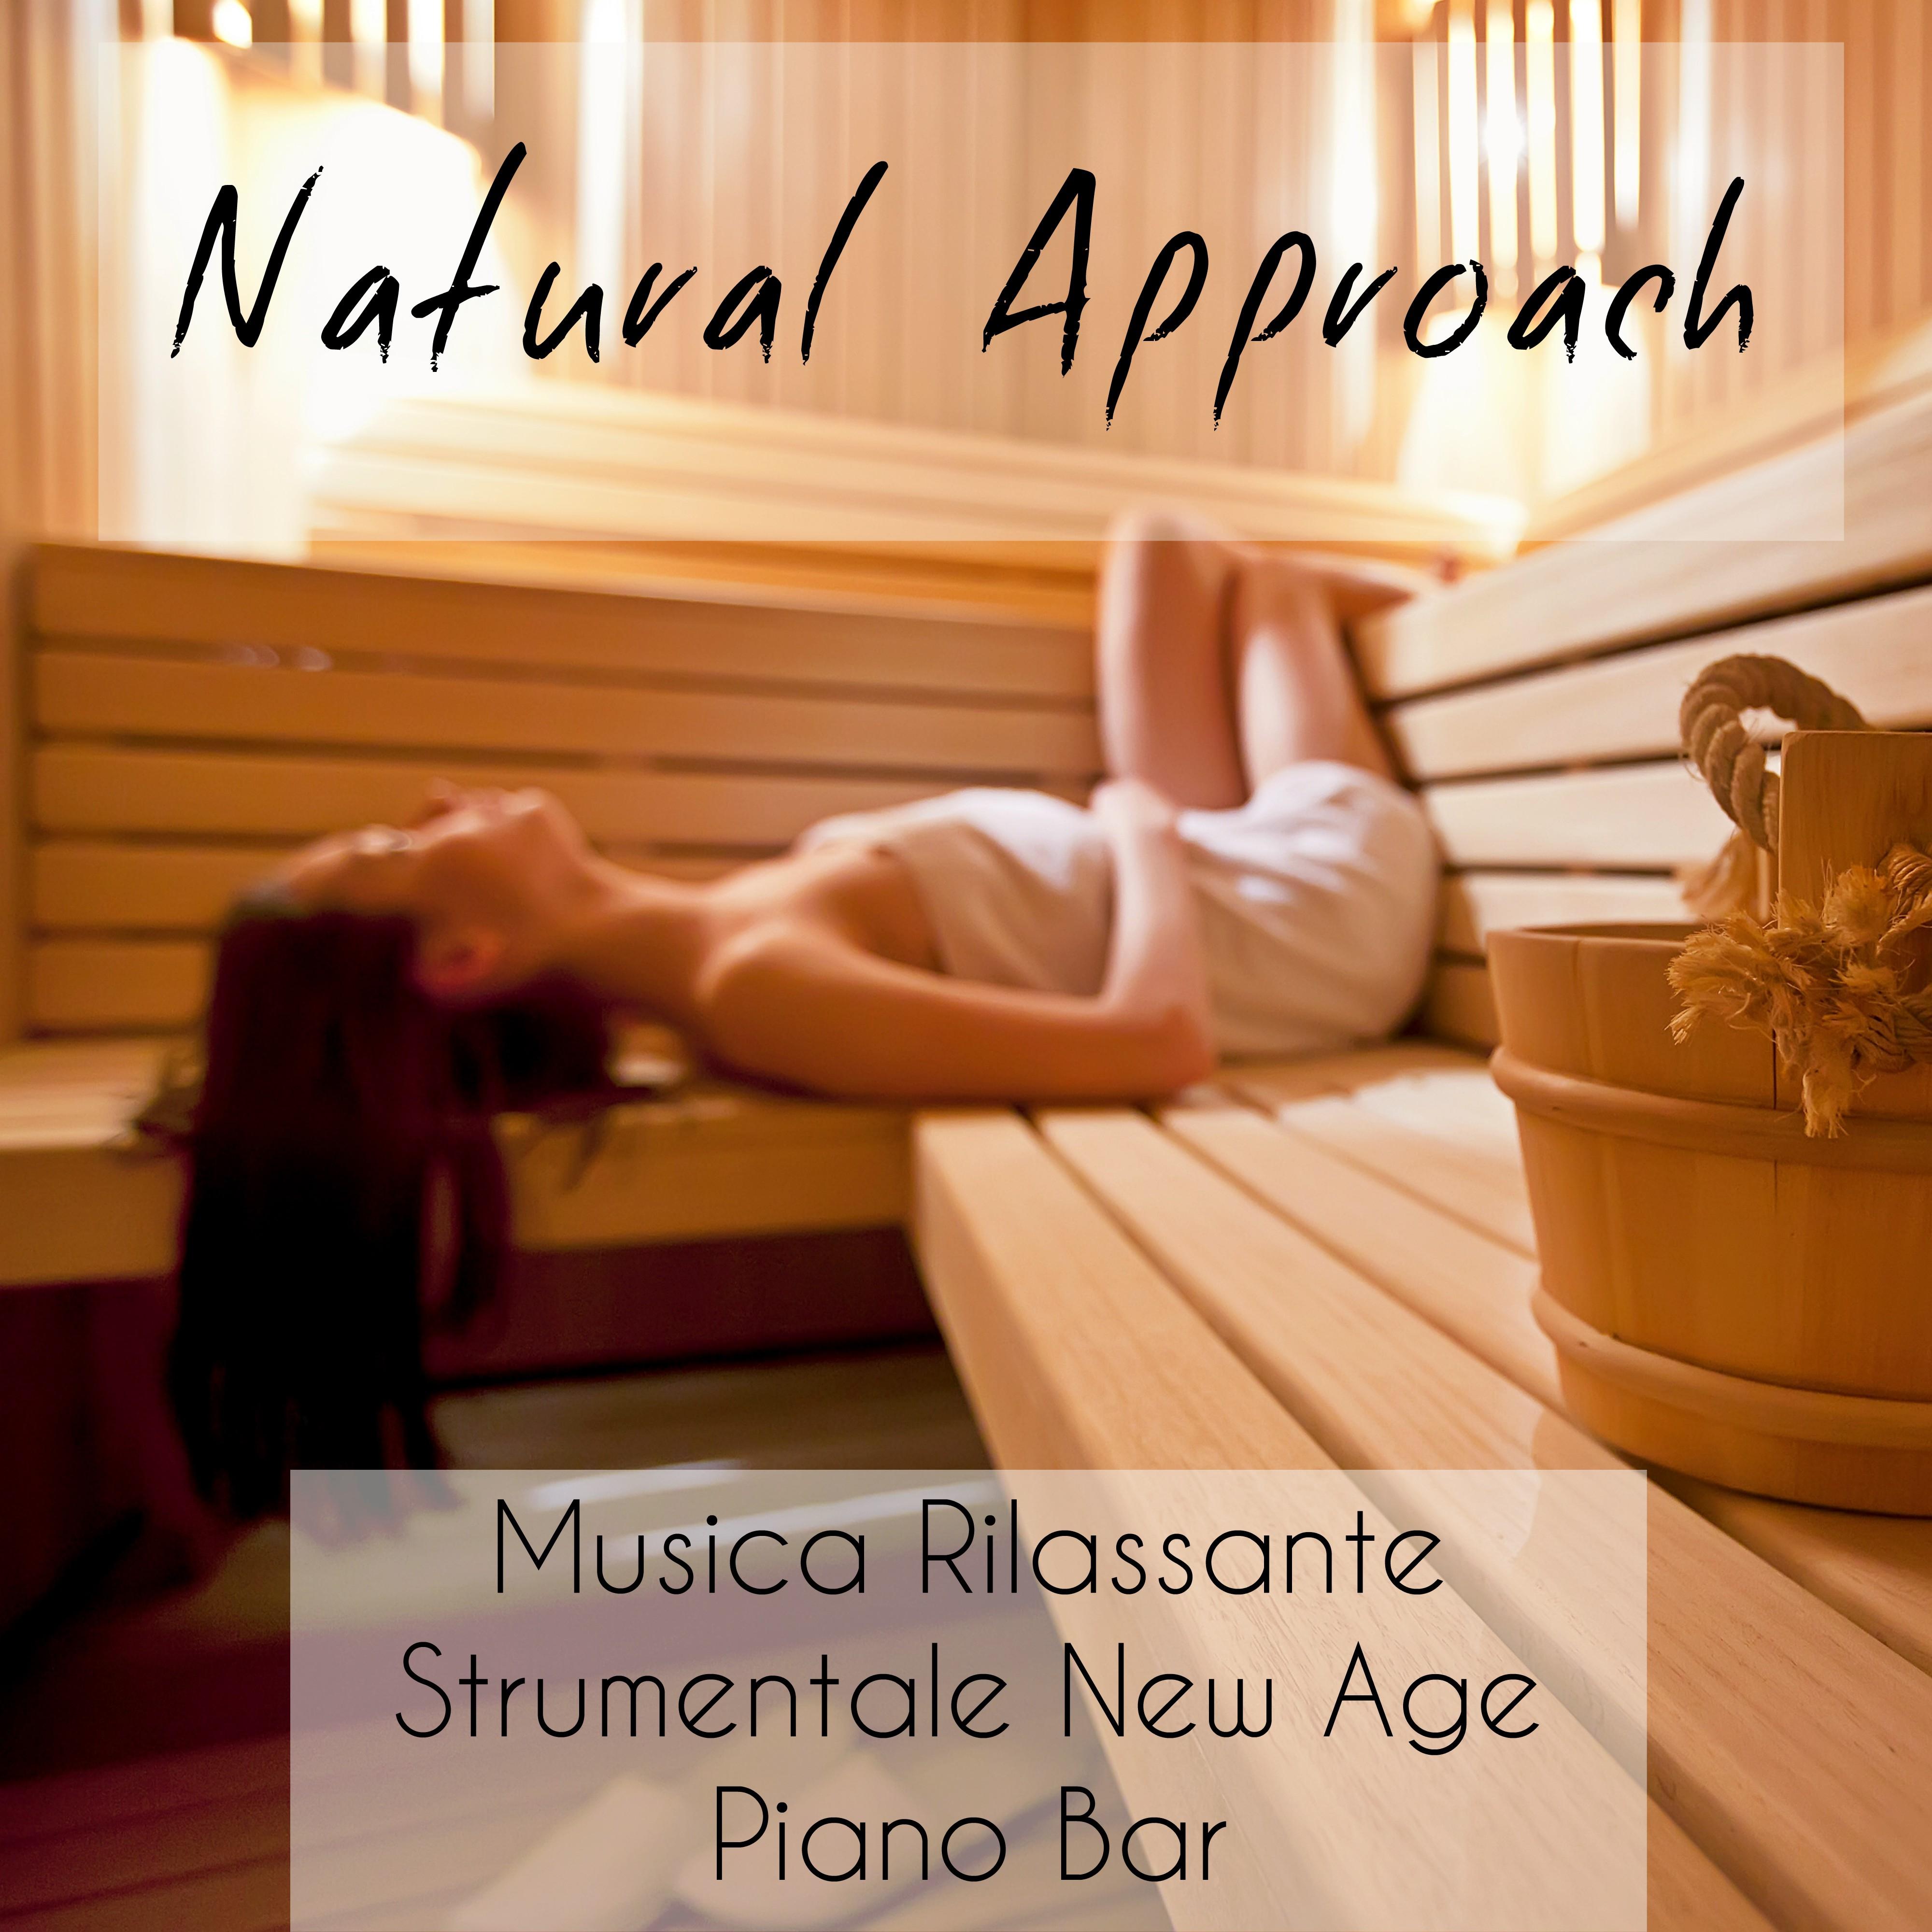 Natural Approach - Musica Rilassante Strumentale New Age Piano Bar per Meditazione Guidata e Relax Spa